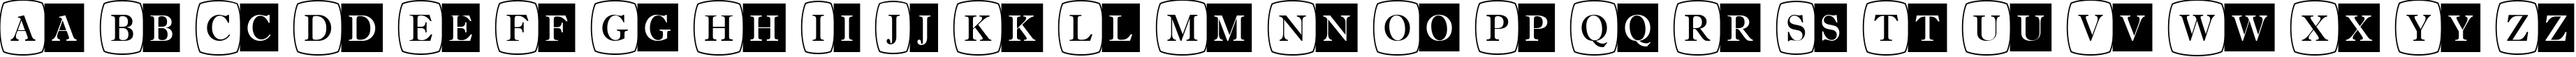 Пример написания английского алфавита шрифтом a_AntiqueTrdCmDc1Cb